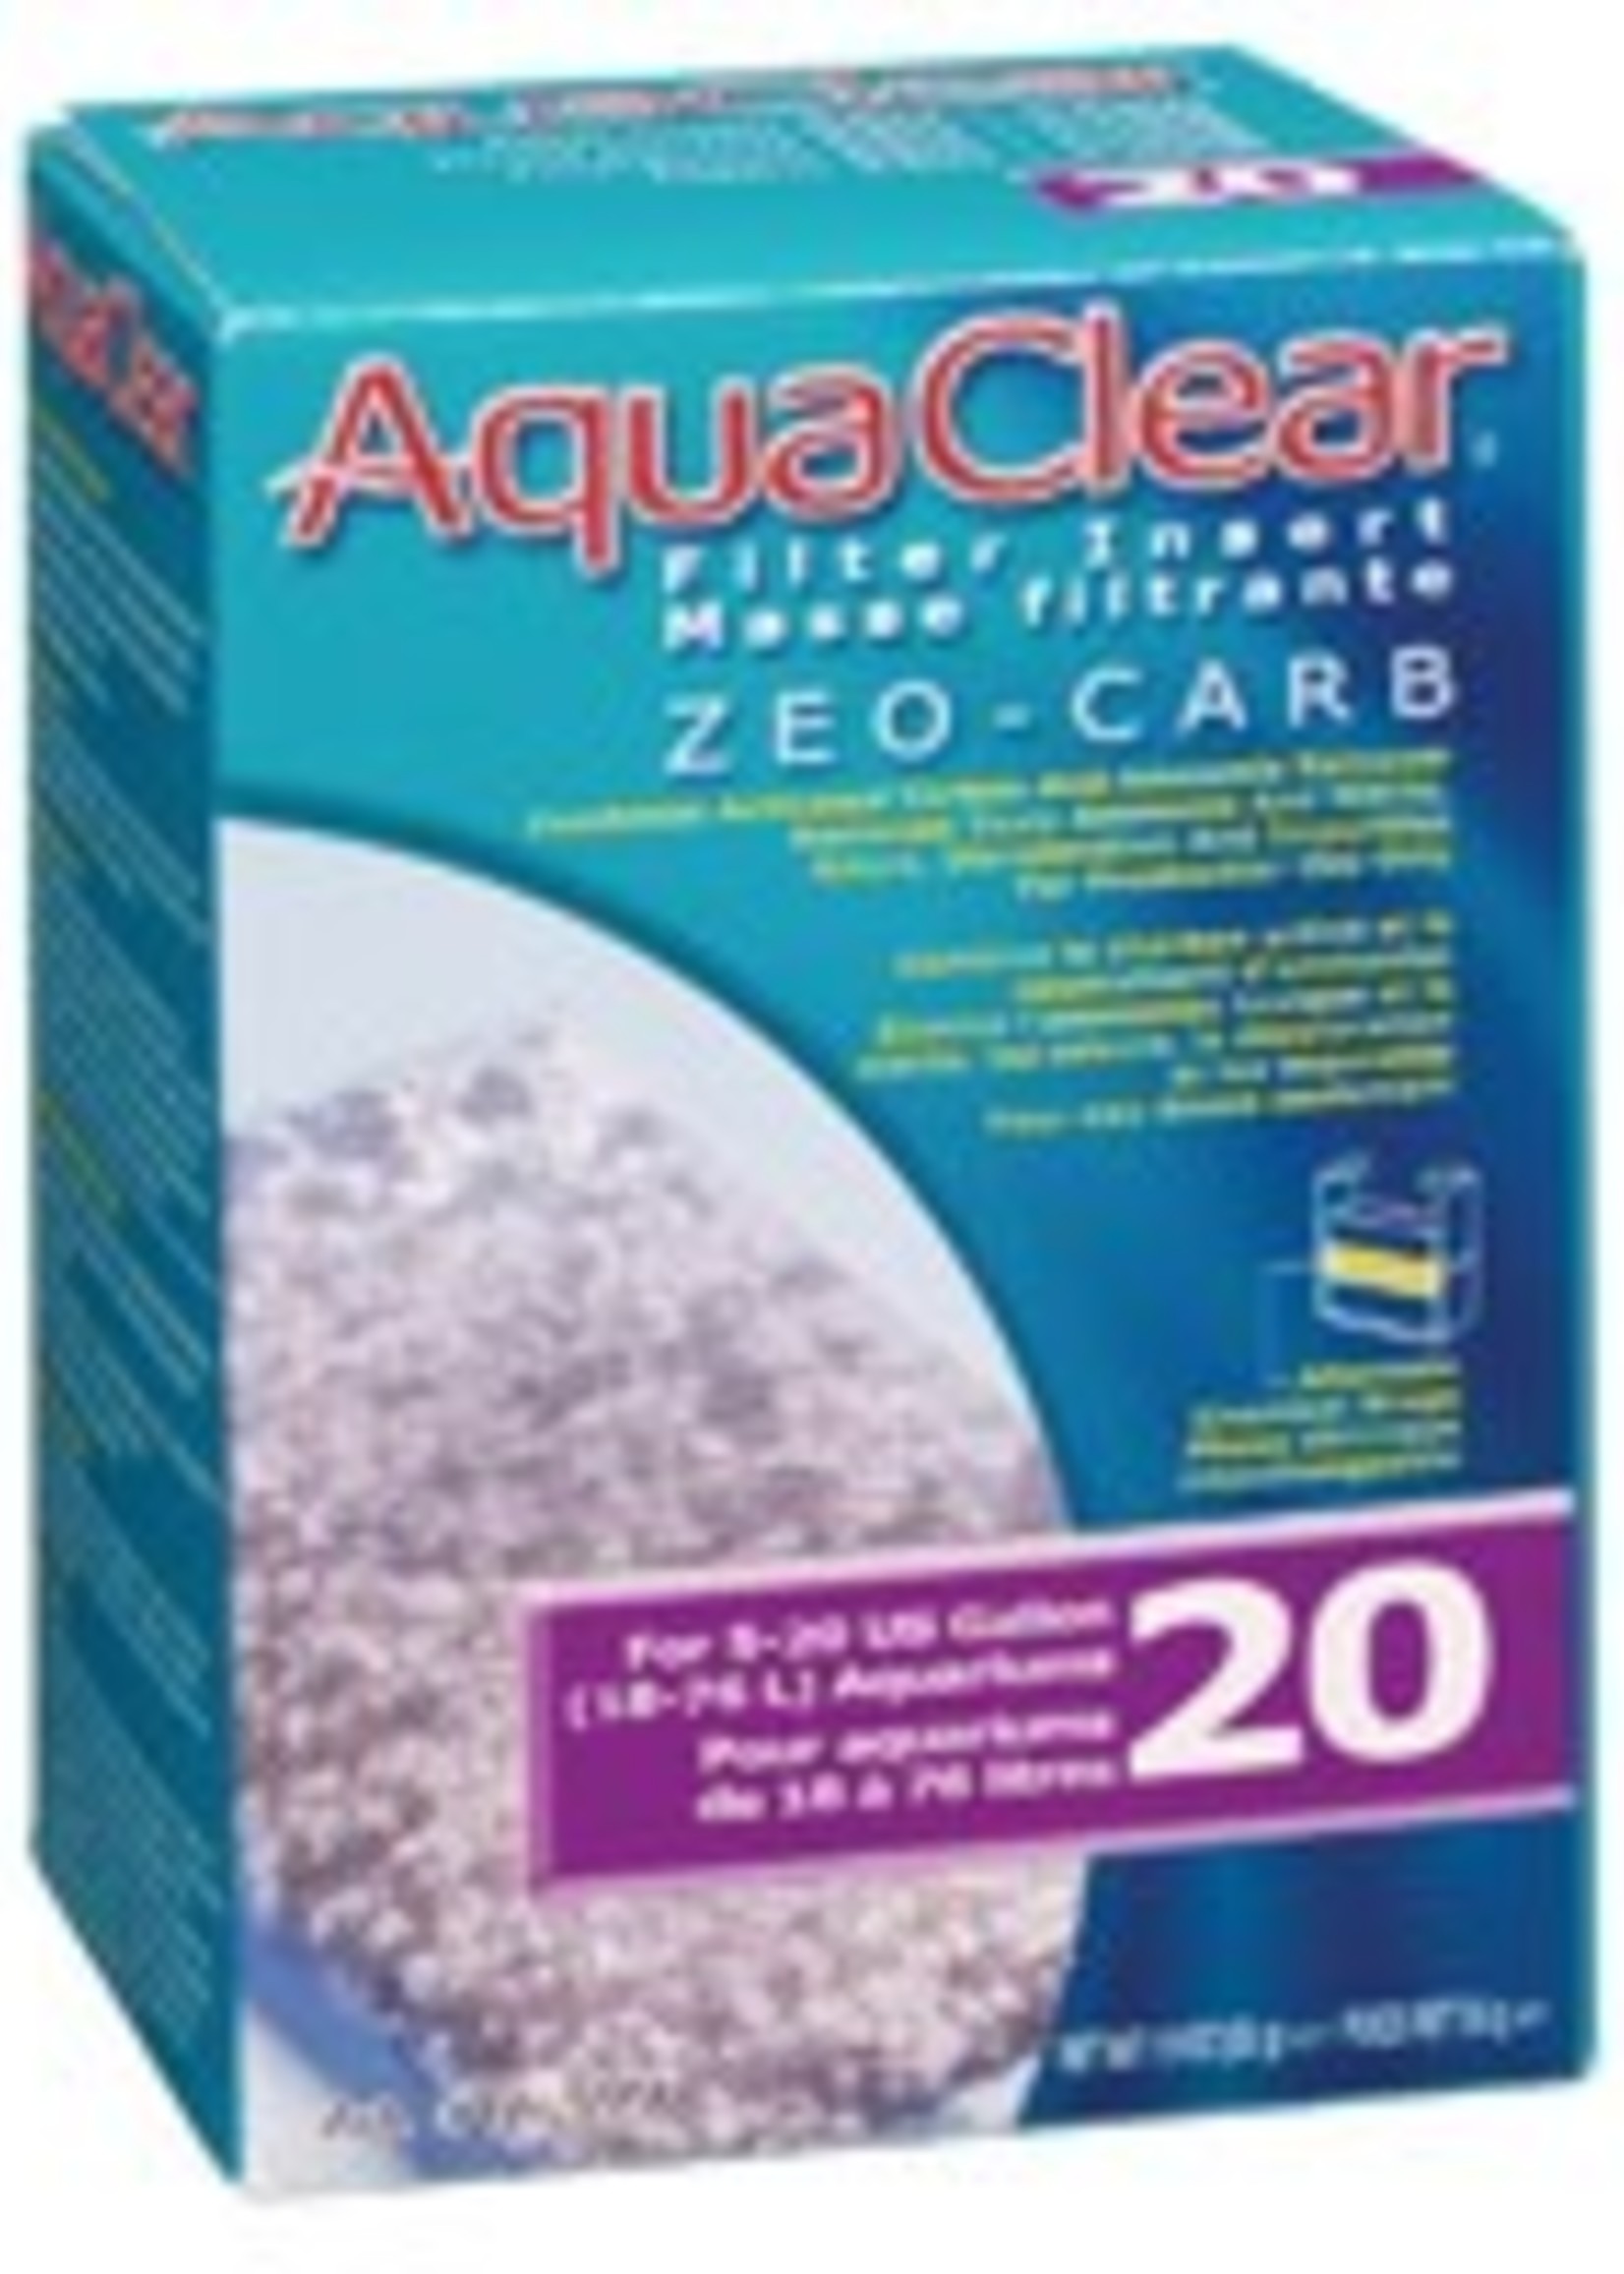 AquaClear 20 Zeo-Carb Filter Insert, 55 g (1.9 oz)